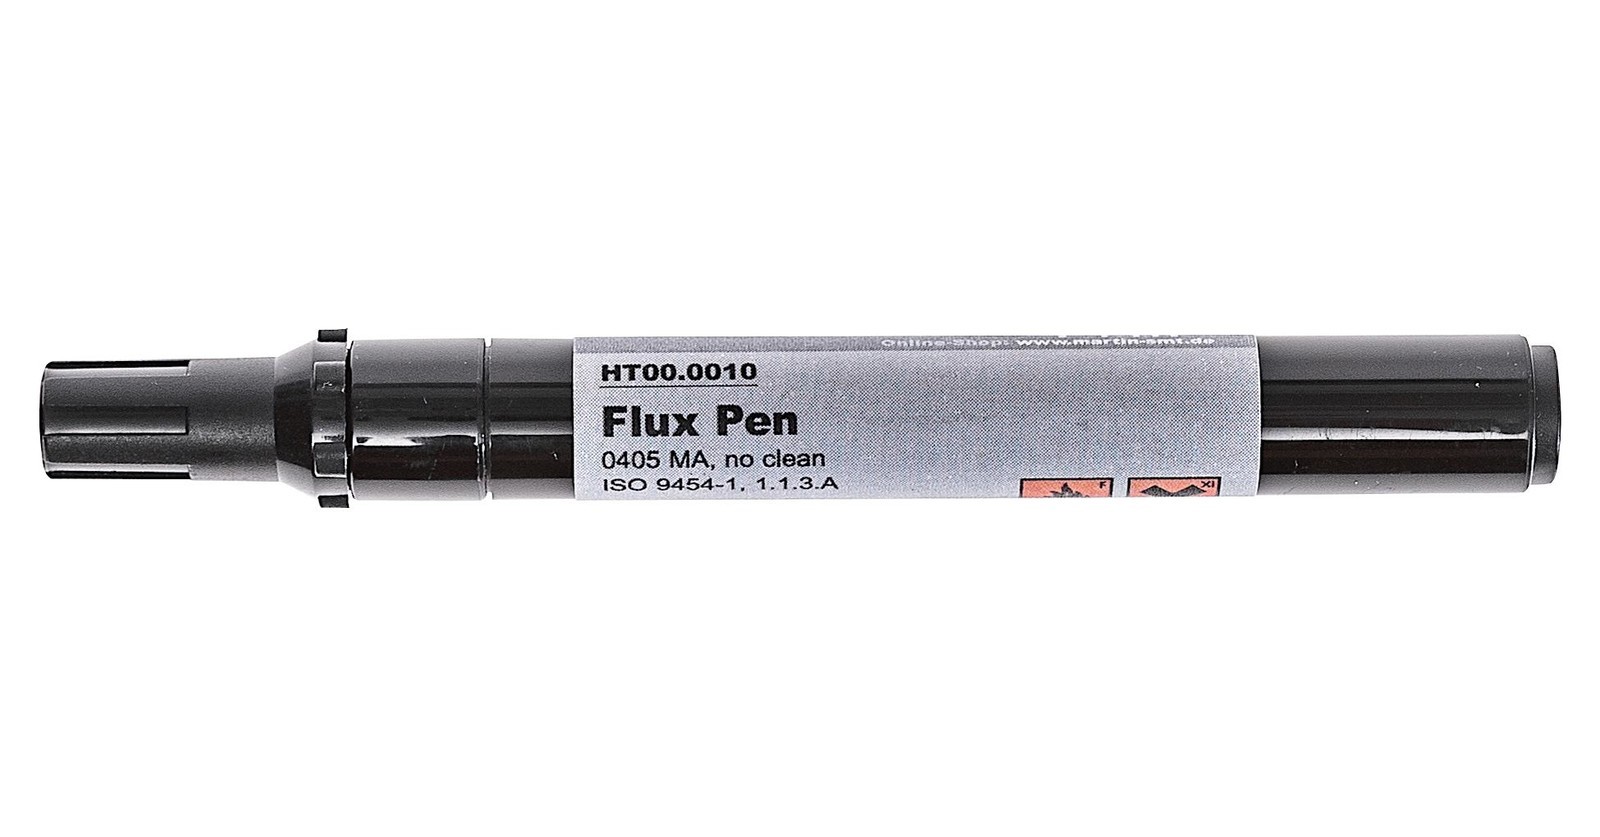 Martin Smt Ht00.0010 Flux Pen F-Sw34, No Clean, Rel0